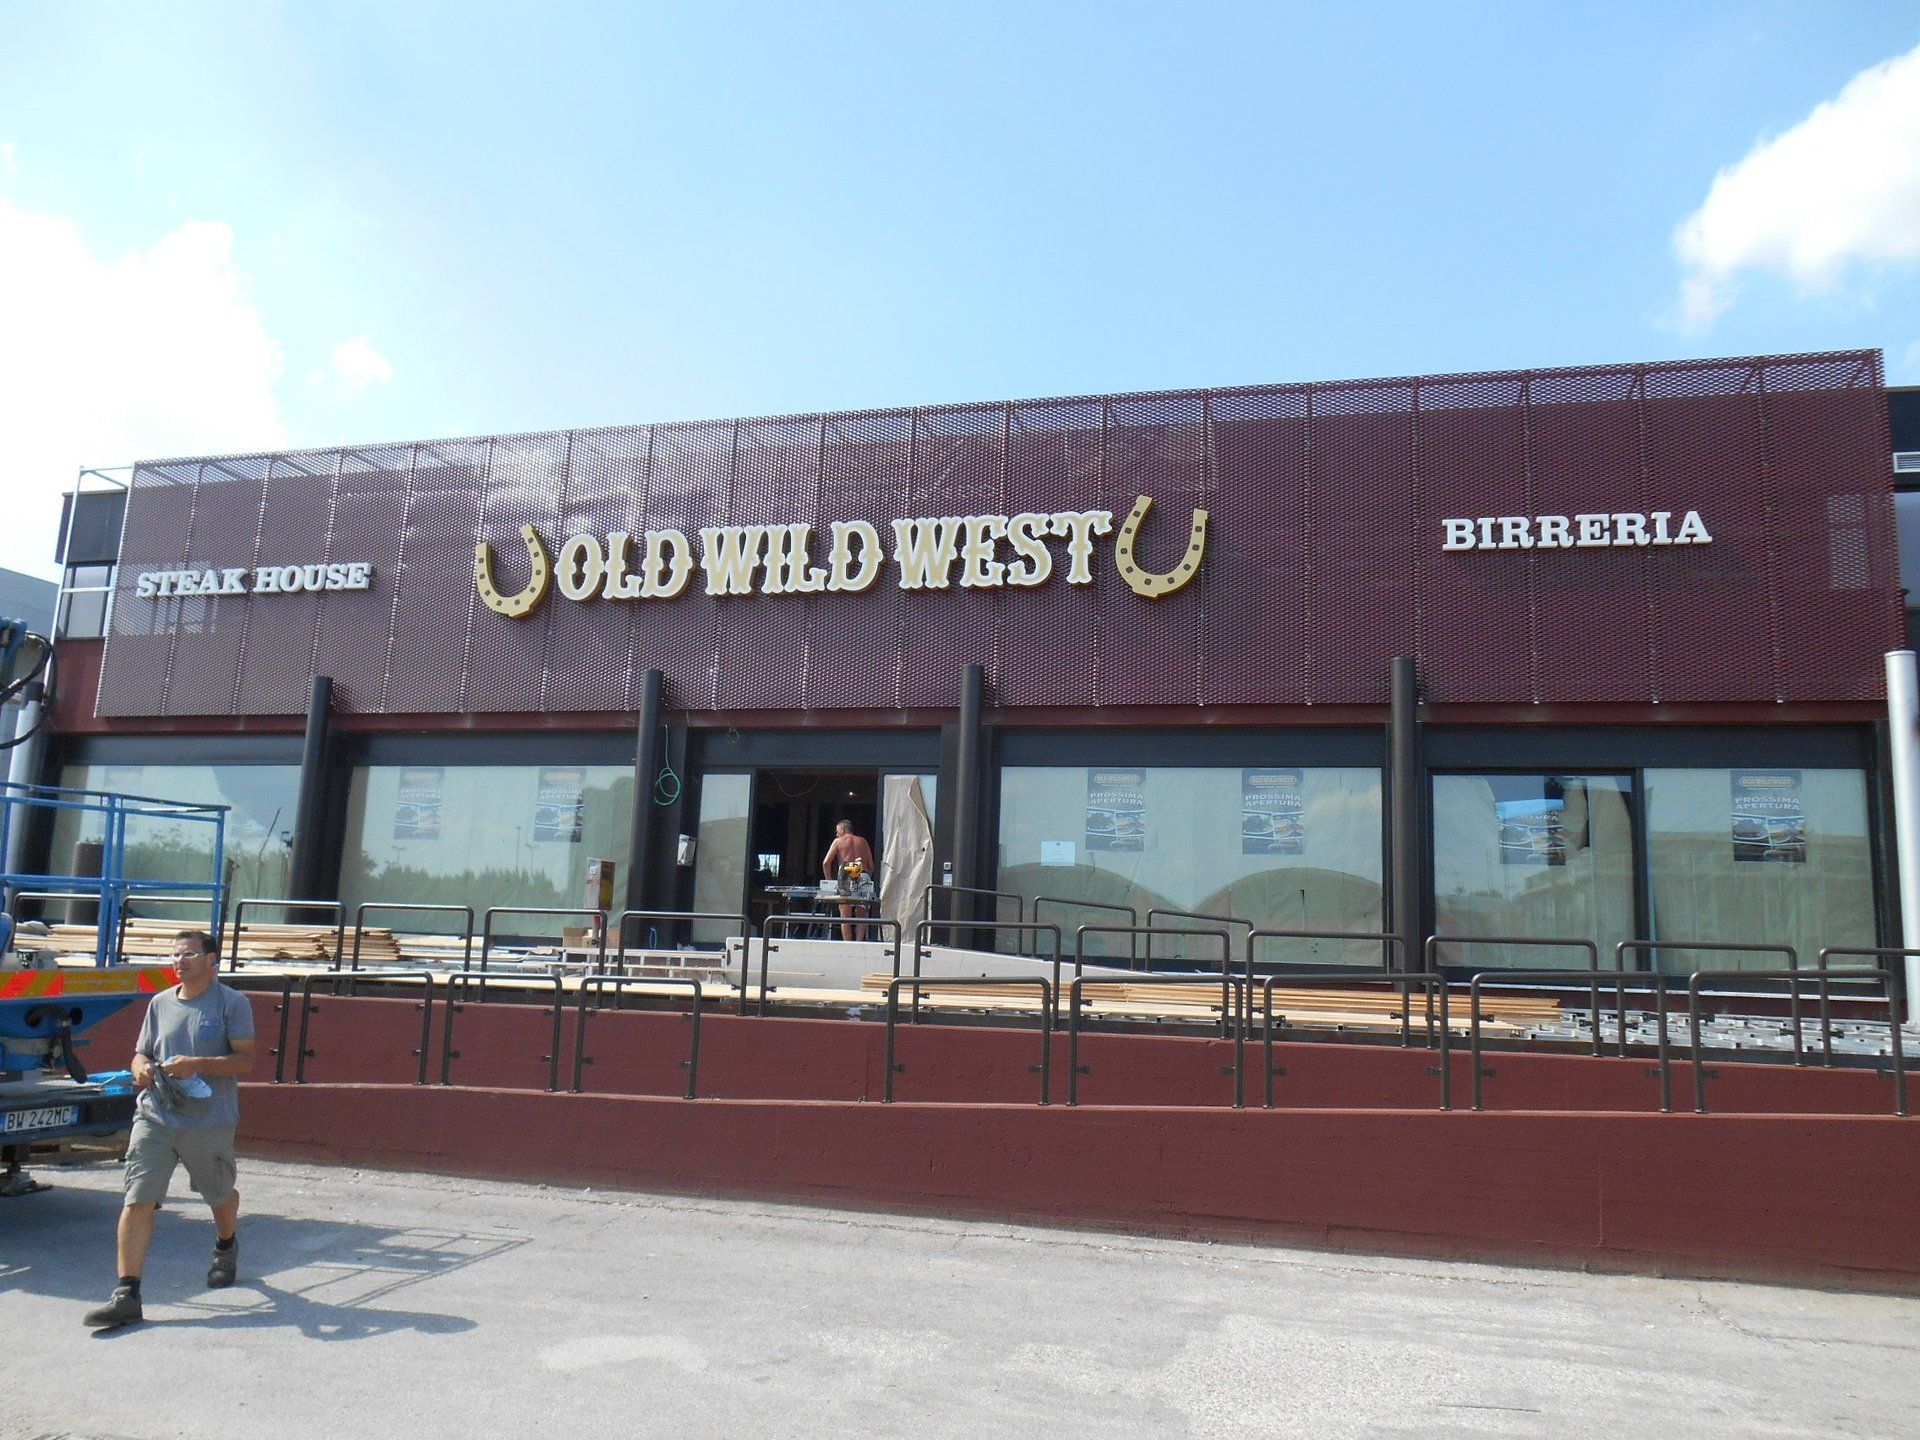 ristorante con insegna luminosa old wild west